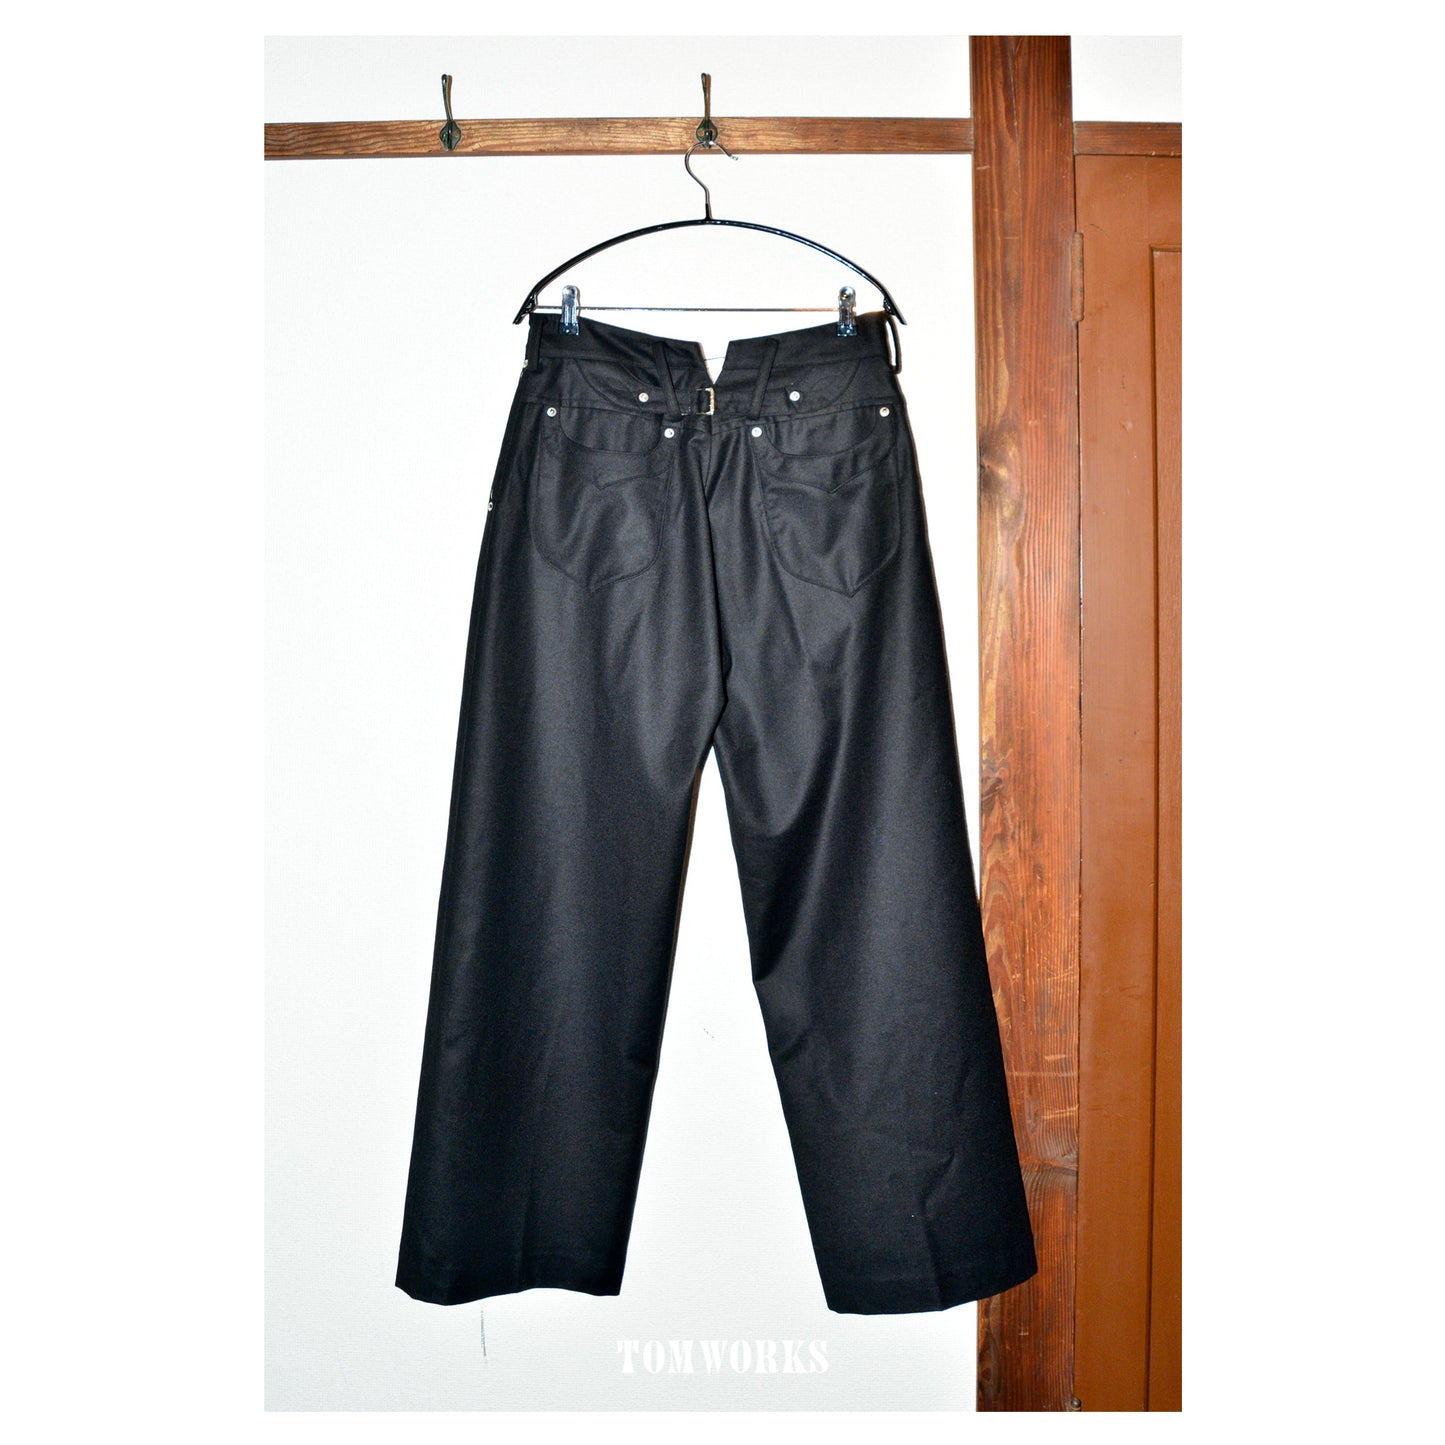 DRESS WOOL PANTS - BLACK / STRIPE -